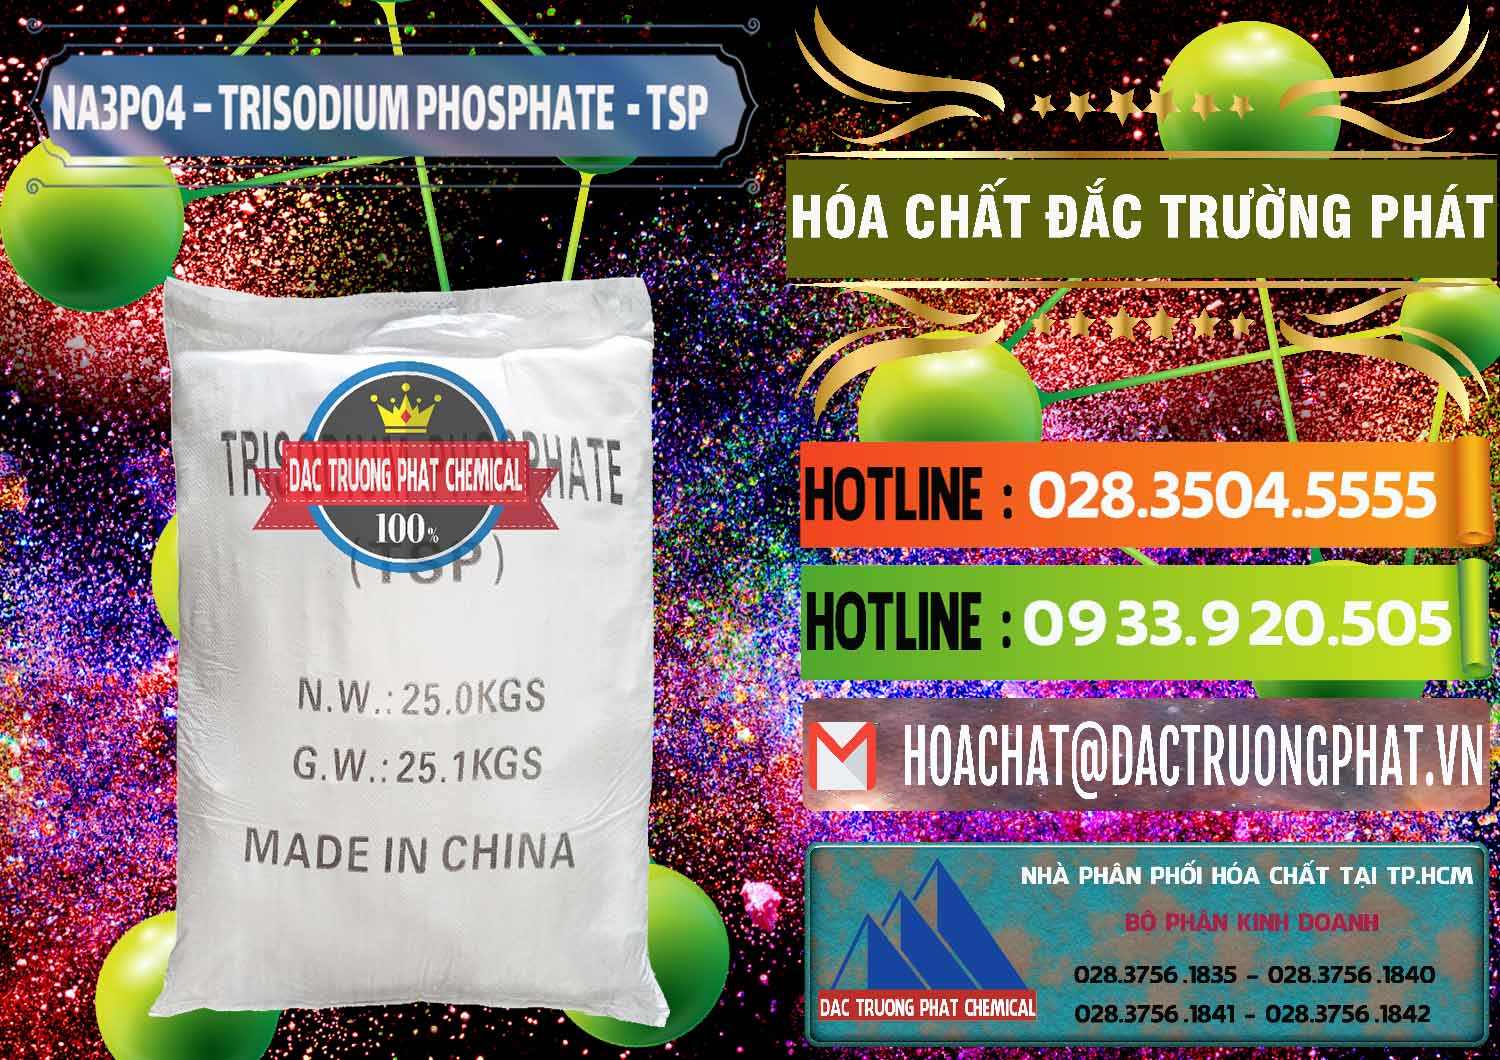 Công ty nhập khẩu - bán Na3PO4 – Trisodium Phosphate Trung Quốc China TSP - 0103 - Cty chuyên phân phối và kinh doanh hóa chất tại TP.HCM - cungcaphoachat.com.vn